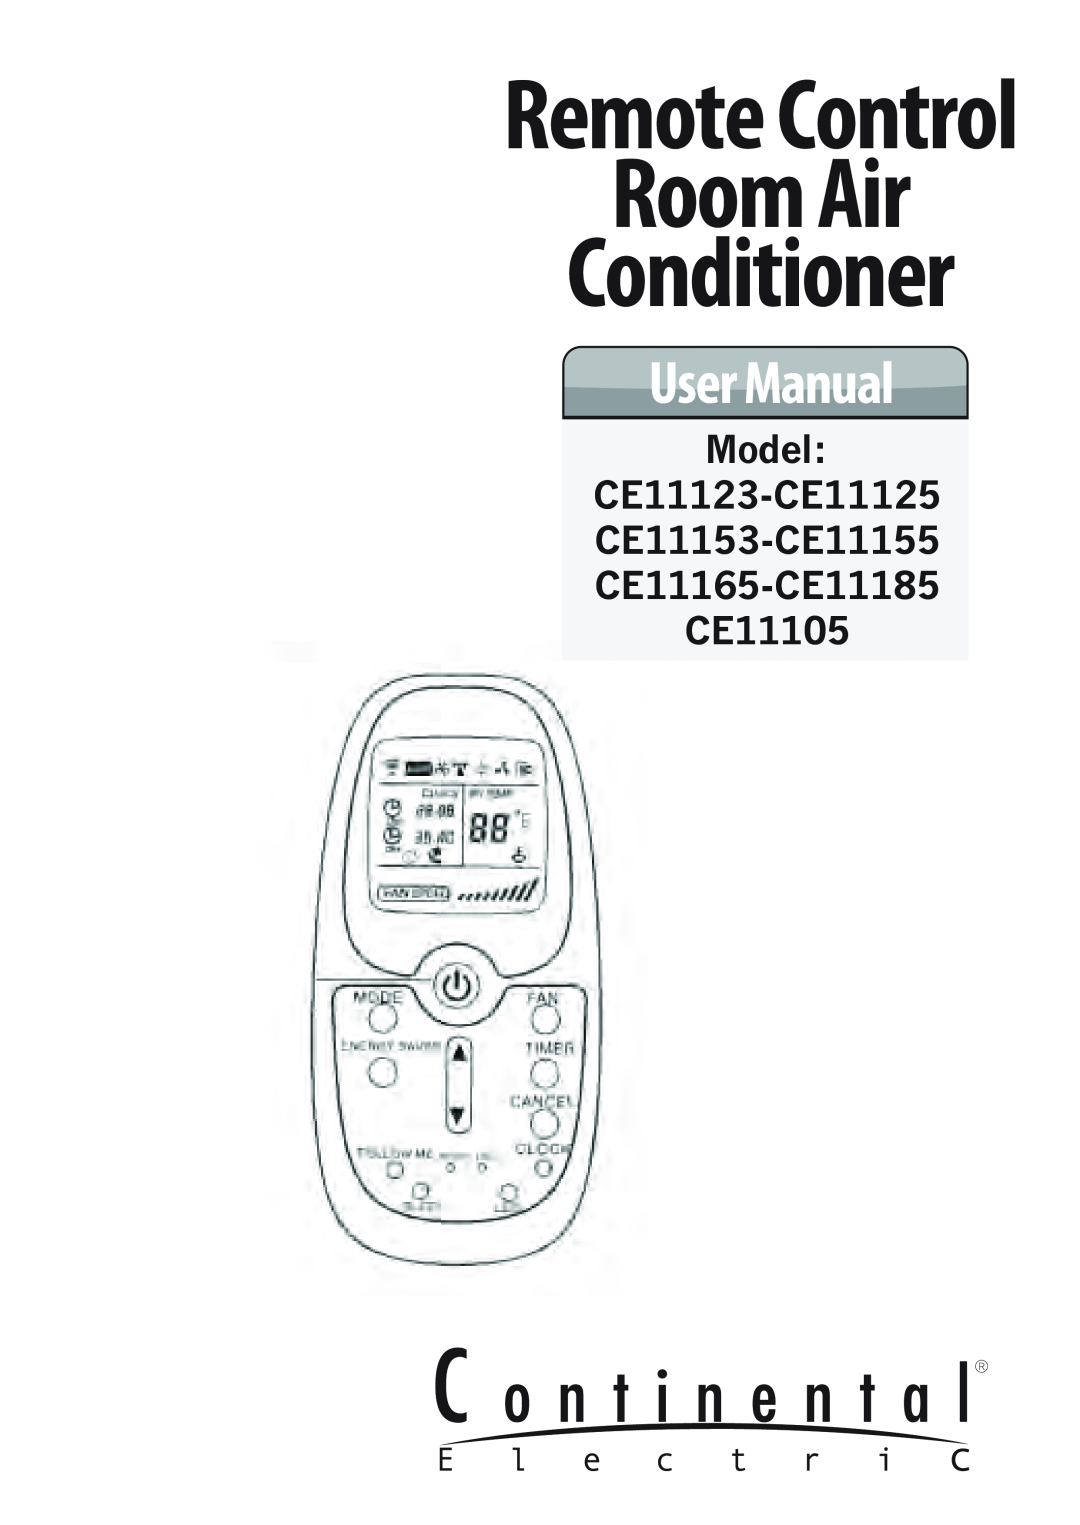 Continental Electric Model CE11123-CE11125 CE11153-CE11155 CE11165-CE11185 CE11105, Room Air, Conditioner, User Manual 